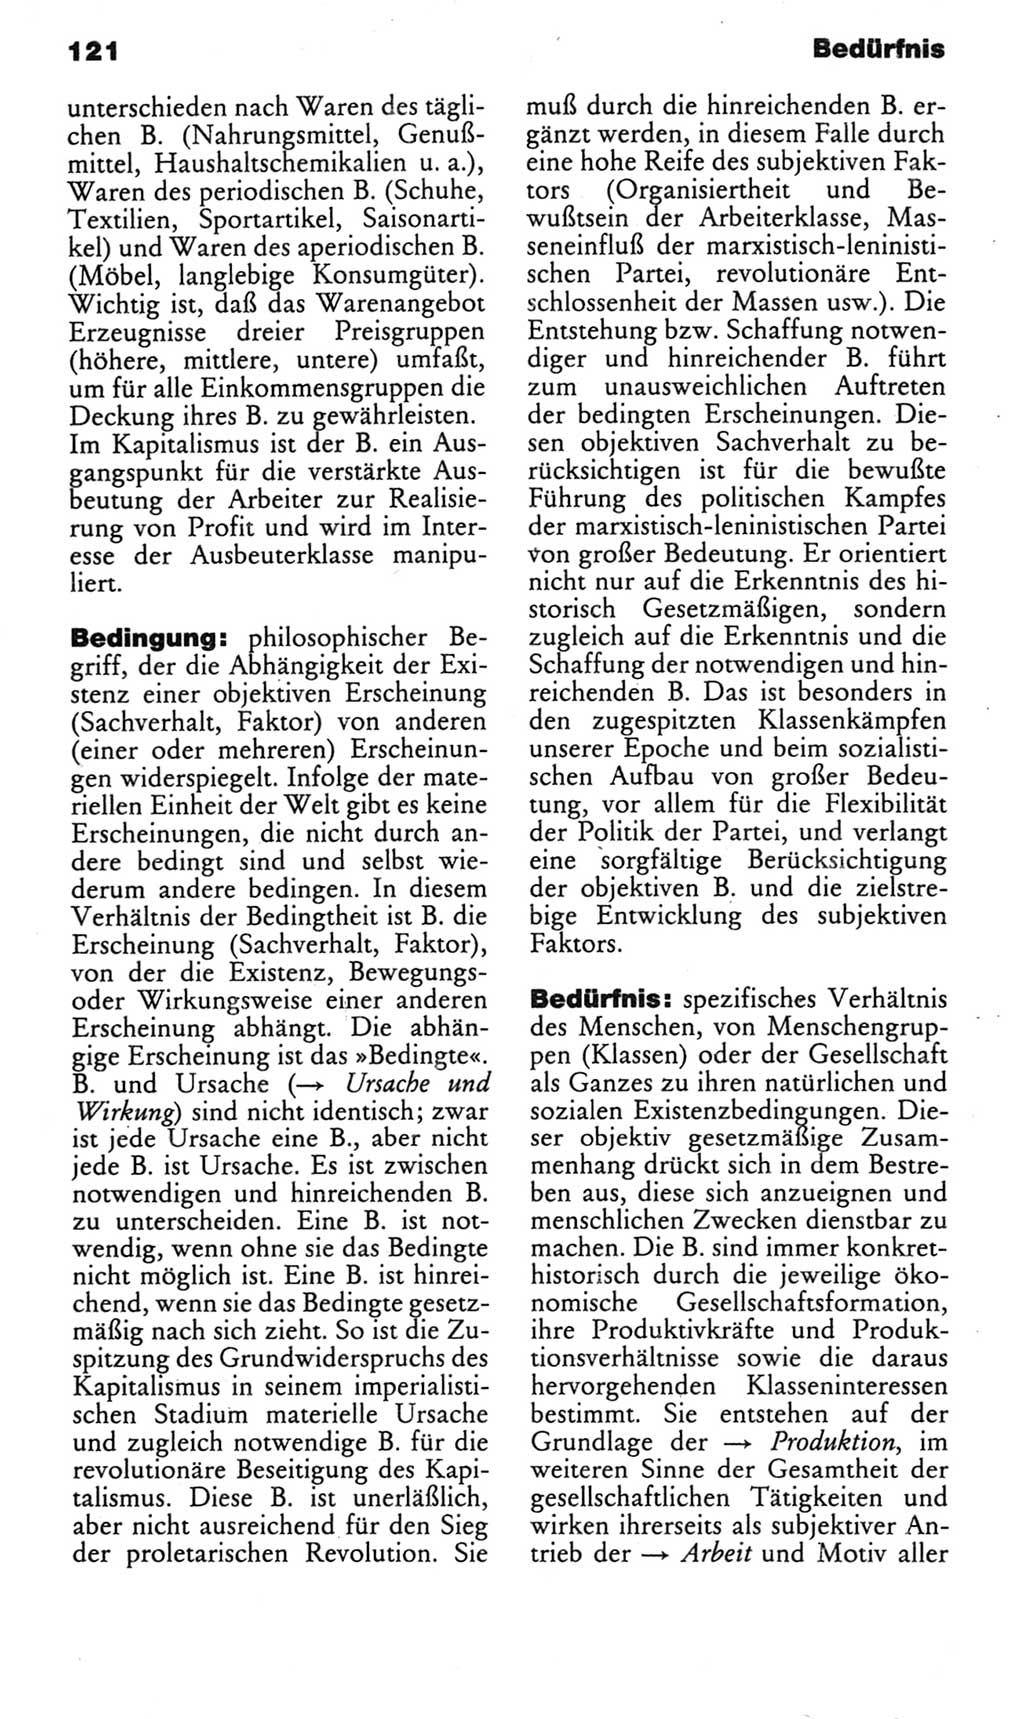 Kleines politisches Wörterbuch [Deutsche Demokratische Republik (DDR)] 1985, Seite 121 (Kl. pol. Wb. DDR 1985, S. 121)